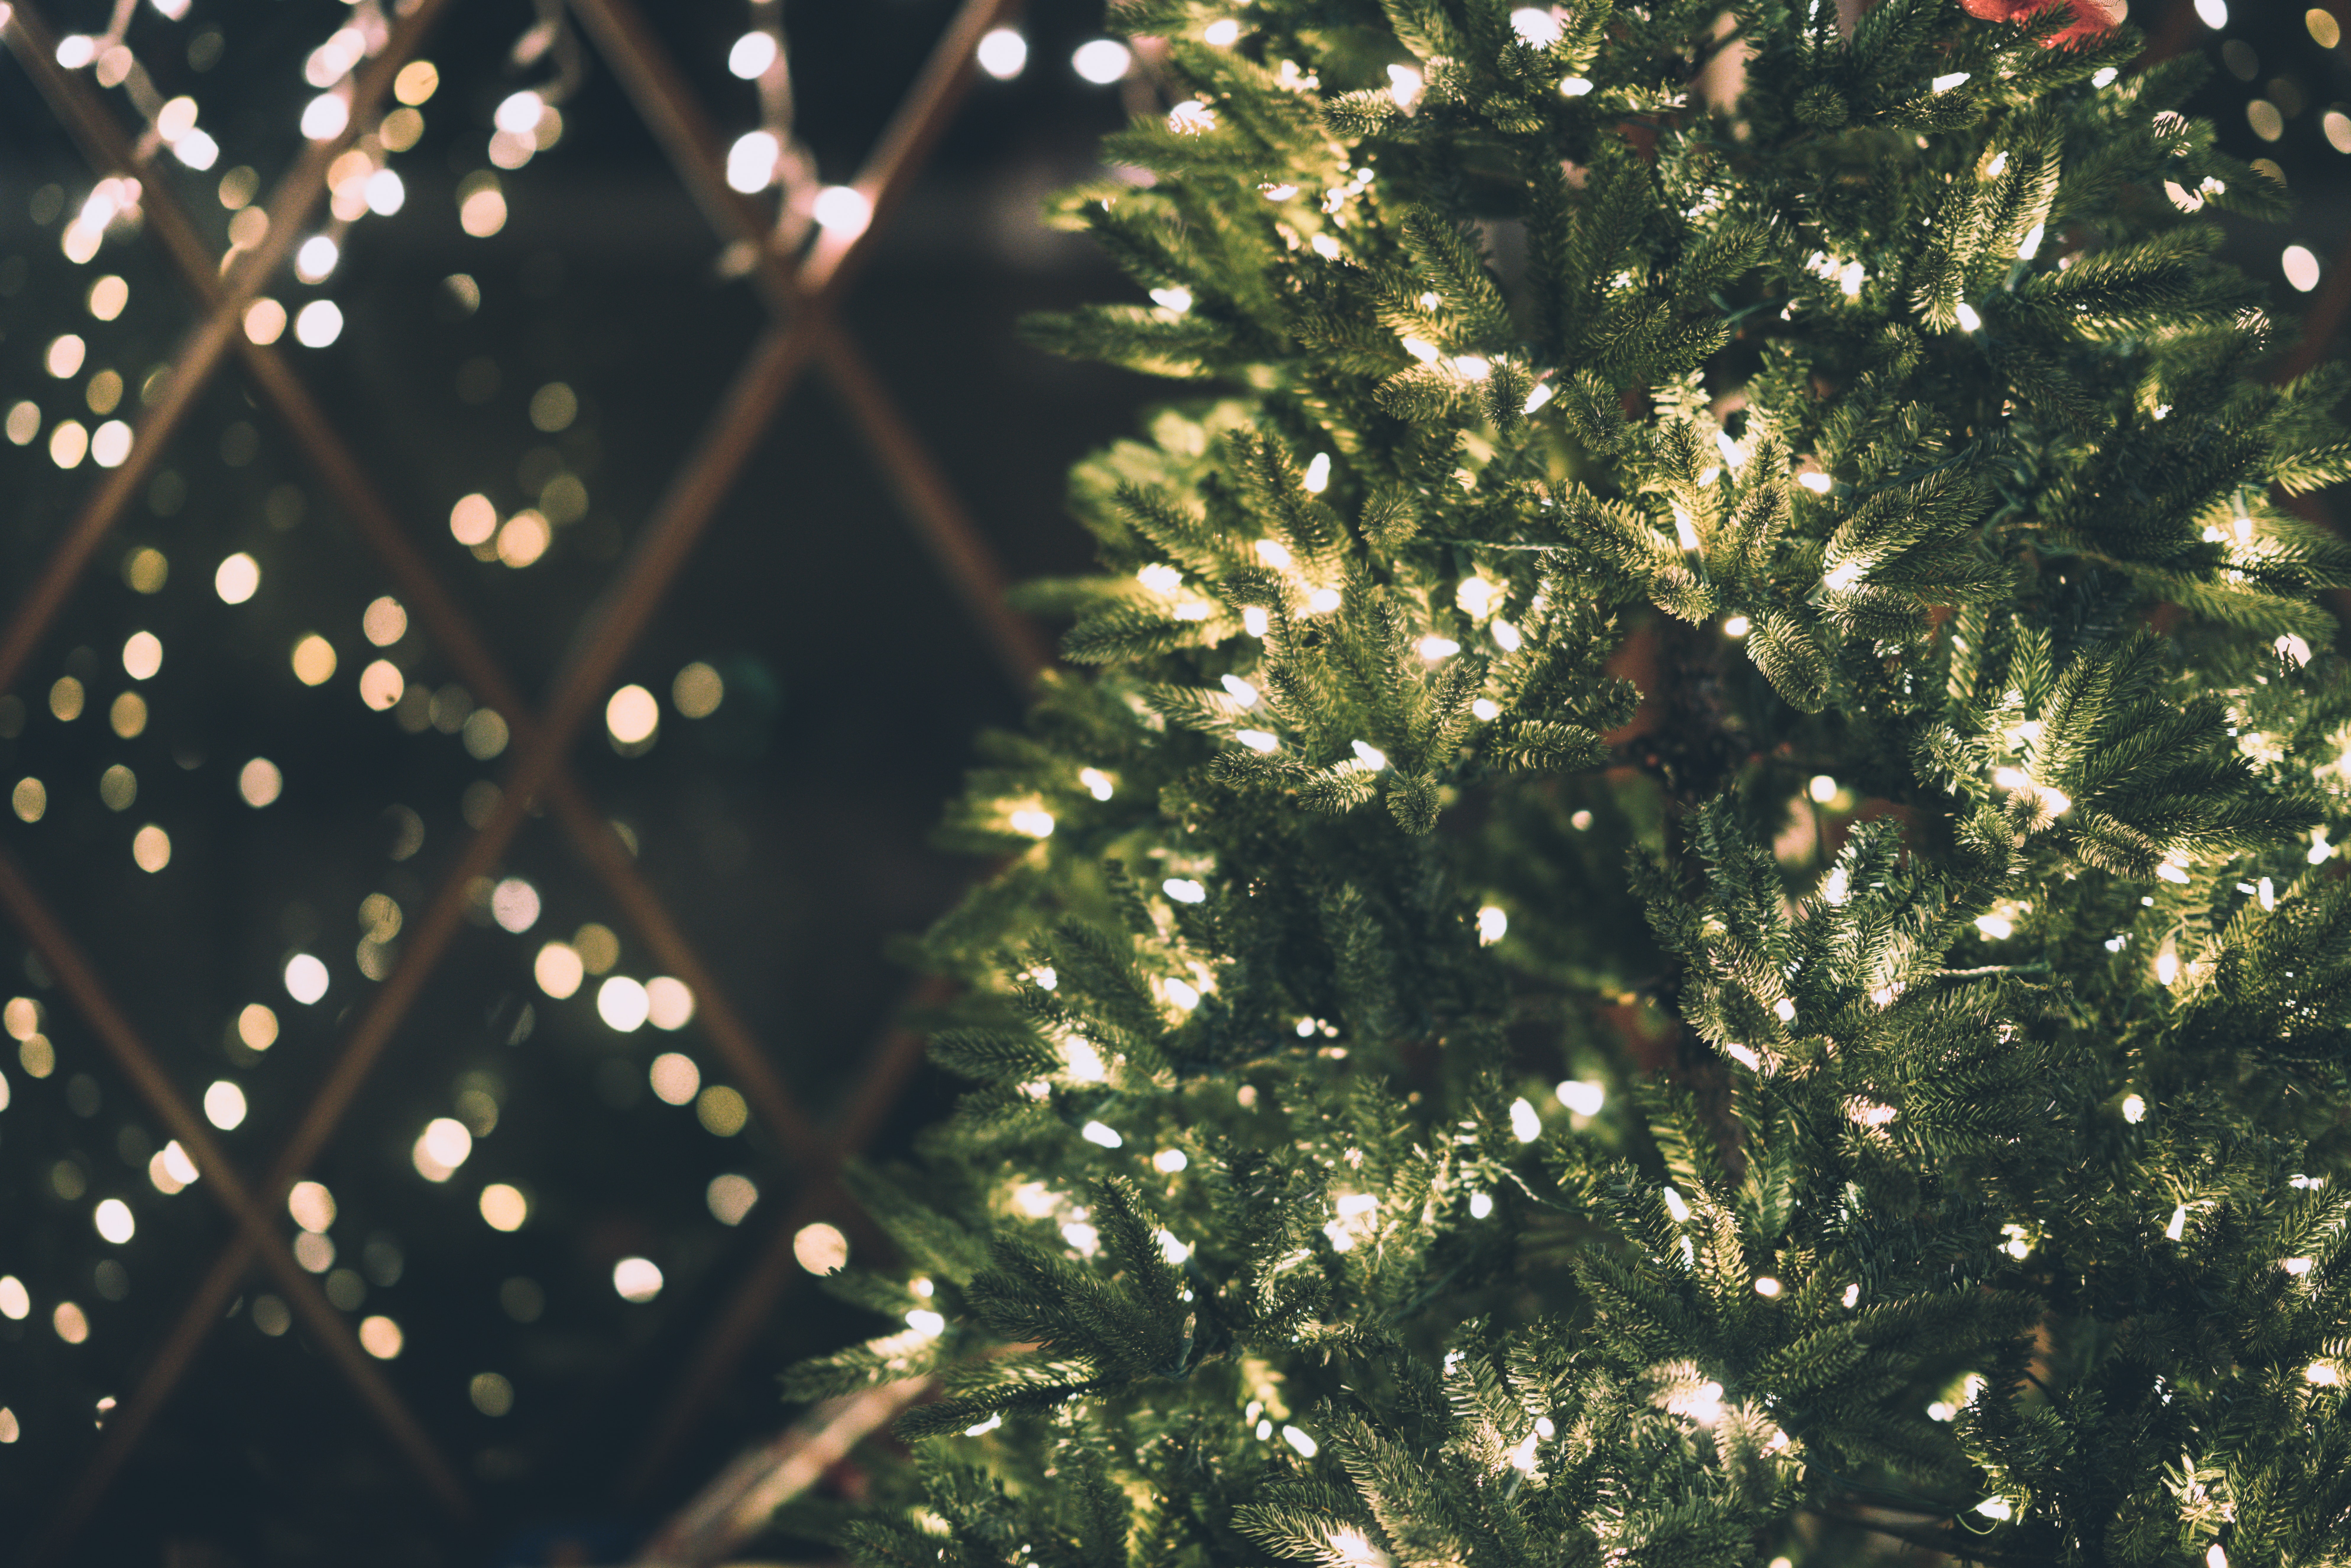 Στήθηκε το χριστουγεννιάτικο δέντρο στο Σύνταγμα- Έχει ύψος όσο μια 7όροφη πολυκατοικία!